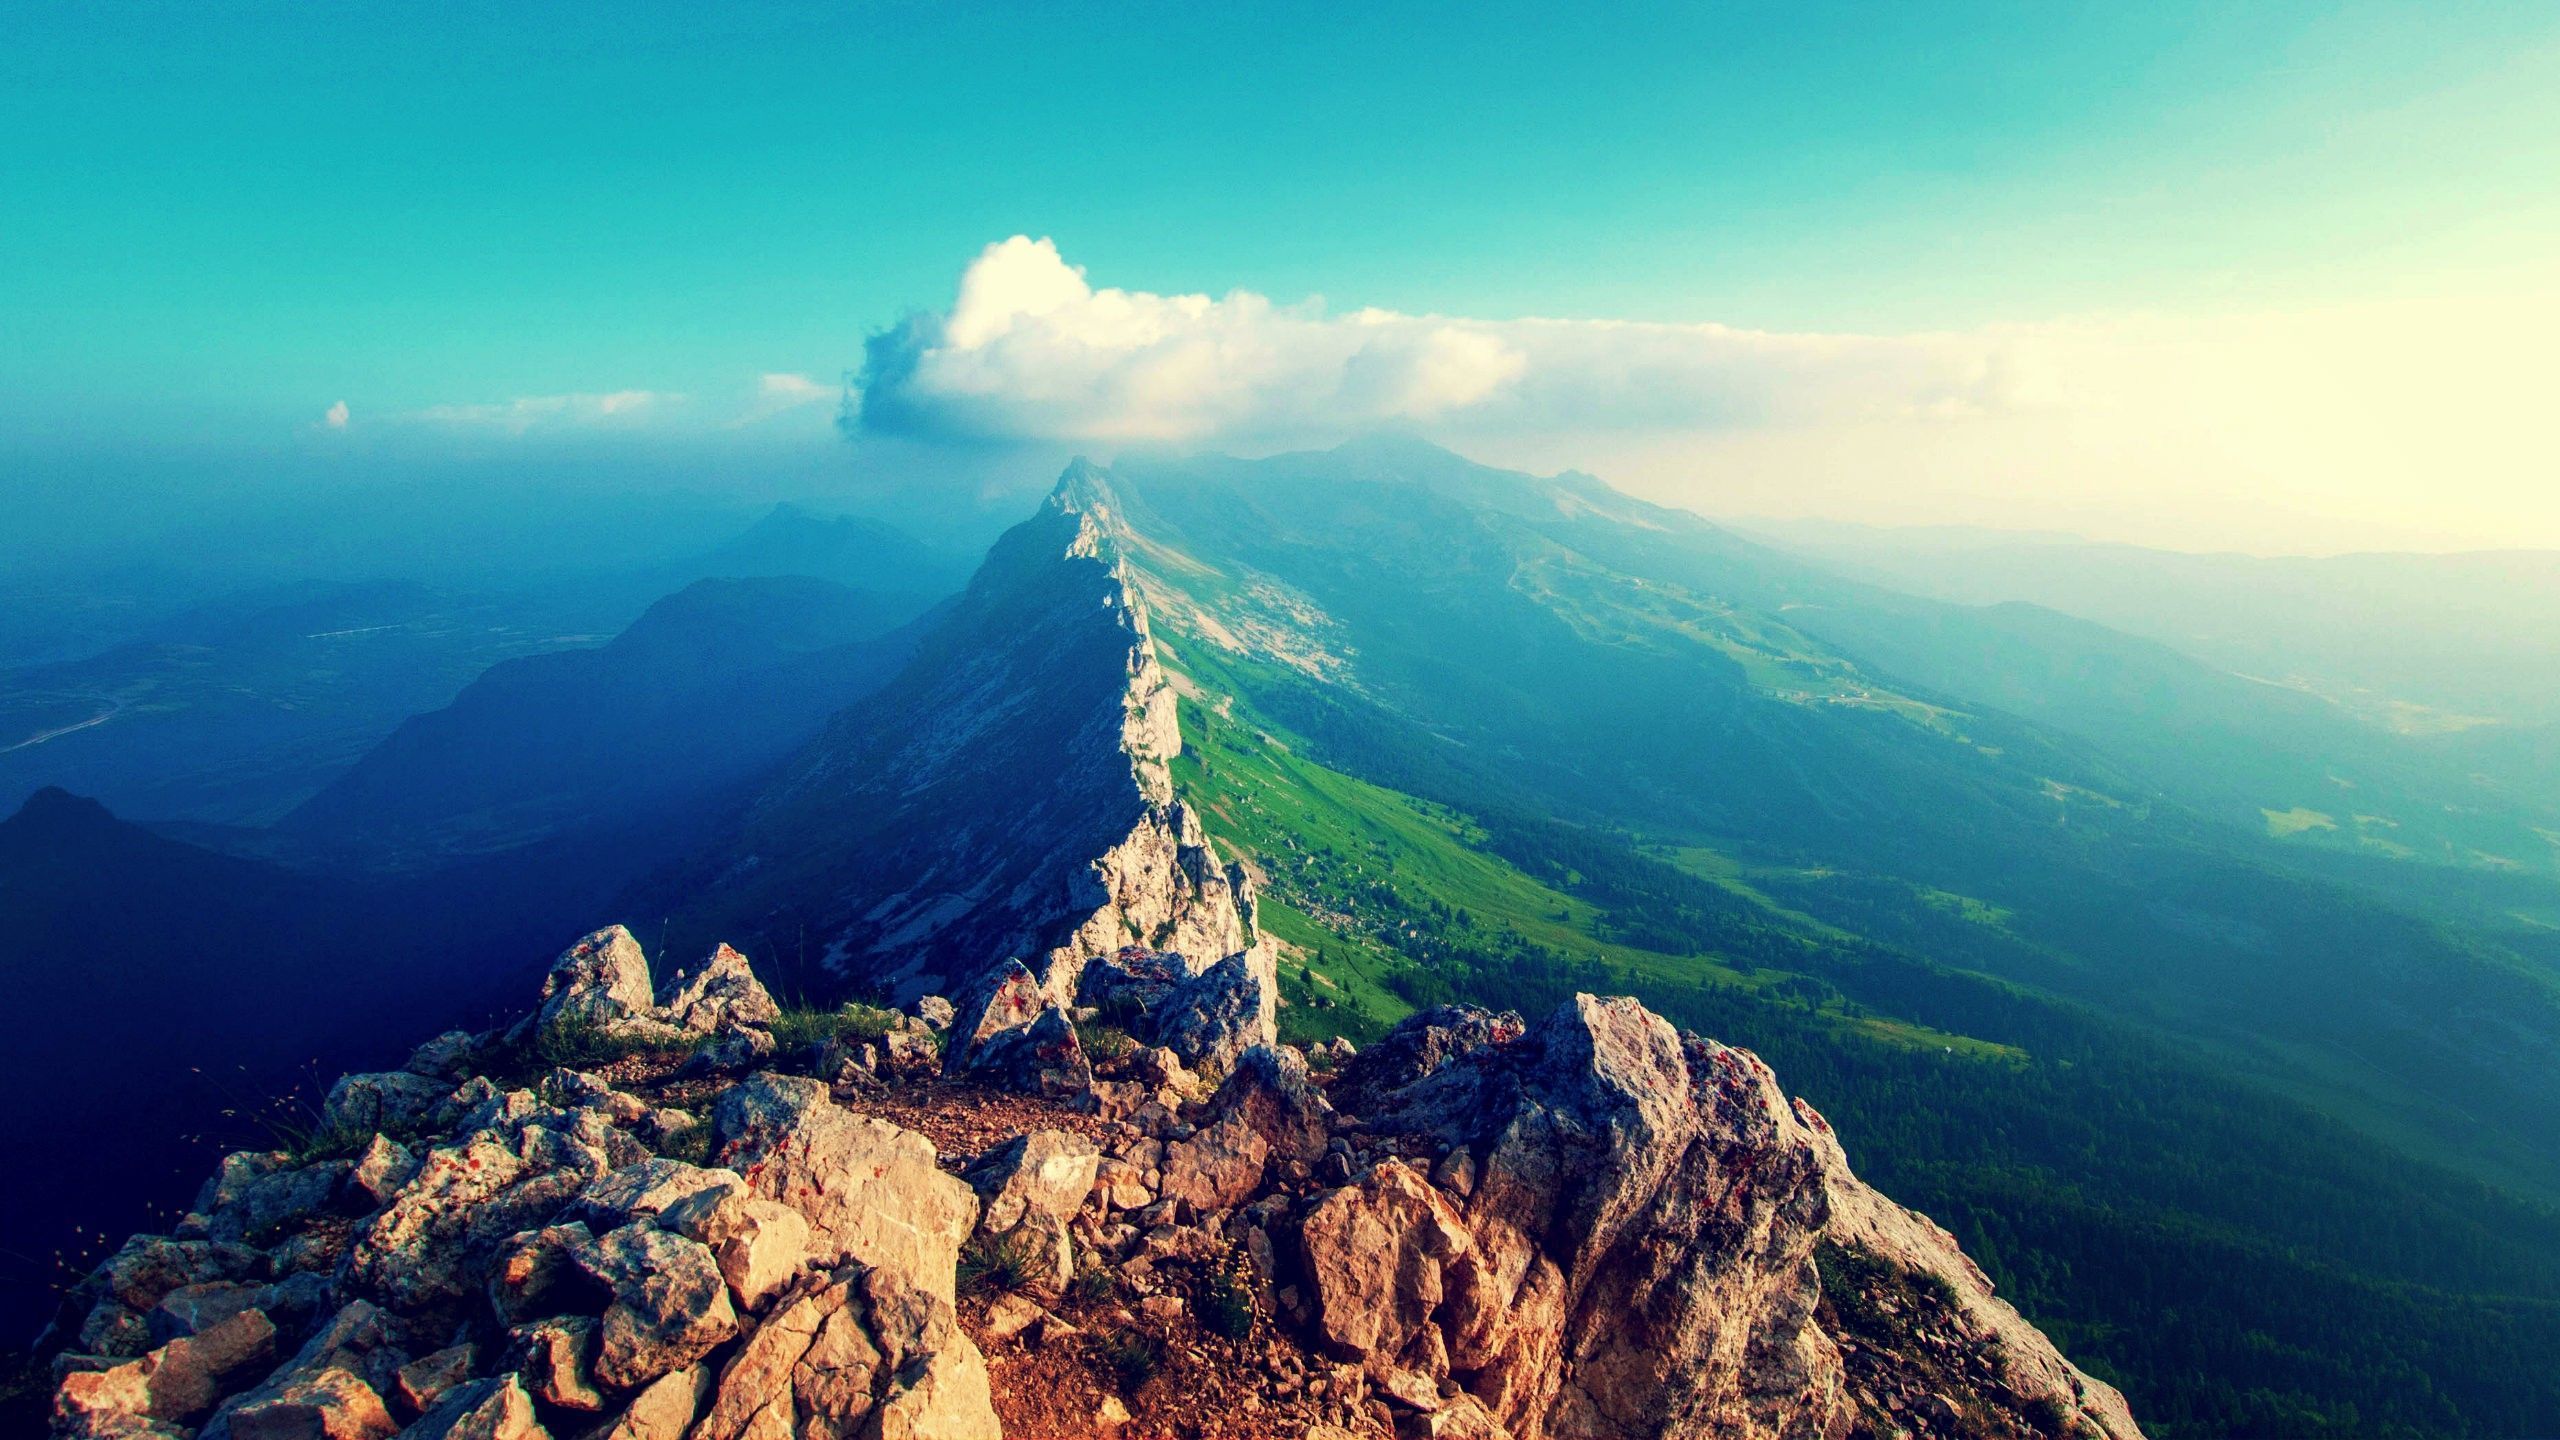 Mountain Range Desktop Wallpaper, Mountain Range Images | Cool ...